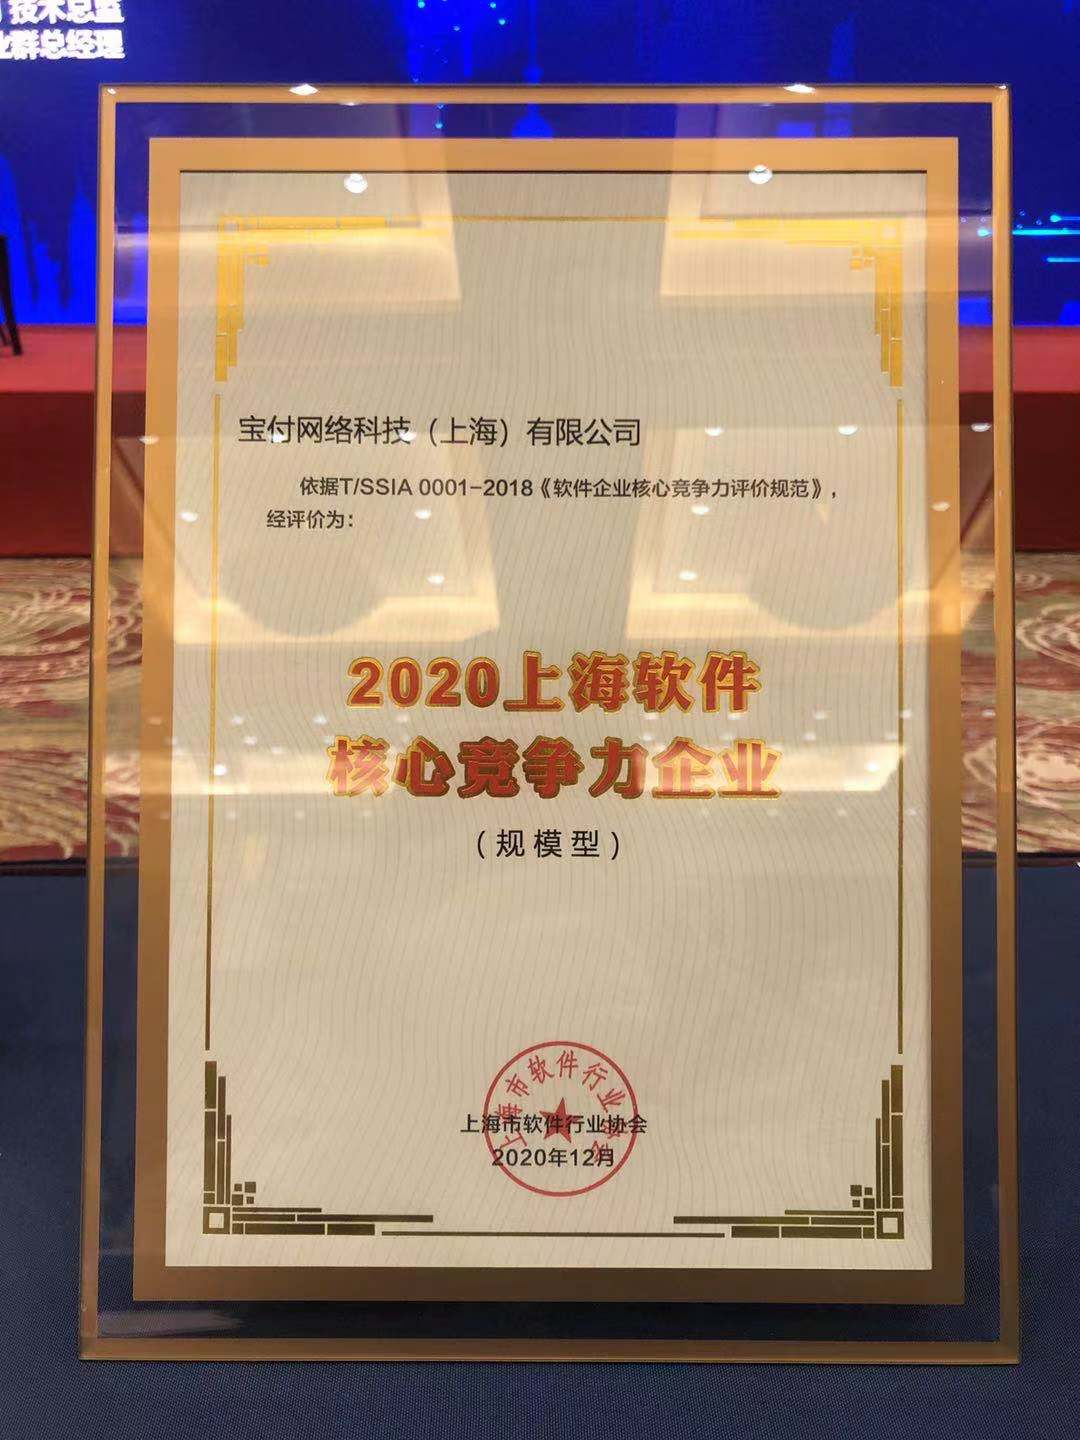 宝付荣获”2020上海软件核心竞争力企业”称号